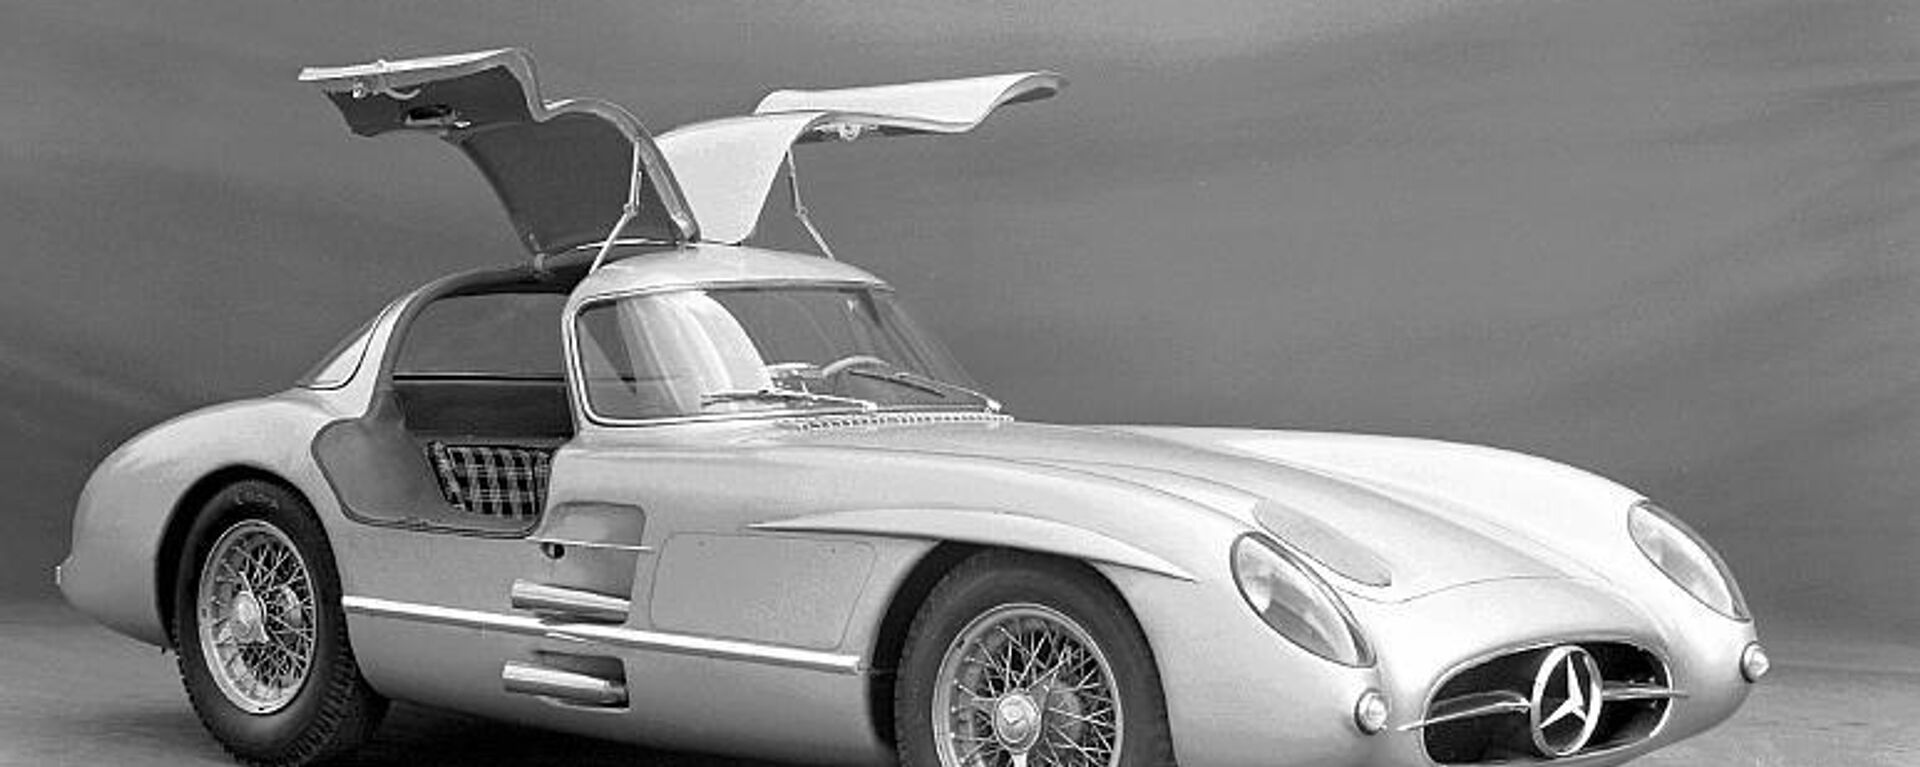 Dünyanın en pahalı arabası: Sadece 2 adet üretilen 1955 model Mercedes, rekor fiyata satıldı  - Sputnik Türkiye, 1920, 20.05.2022